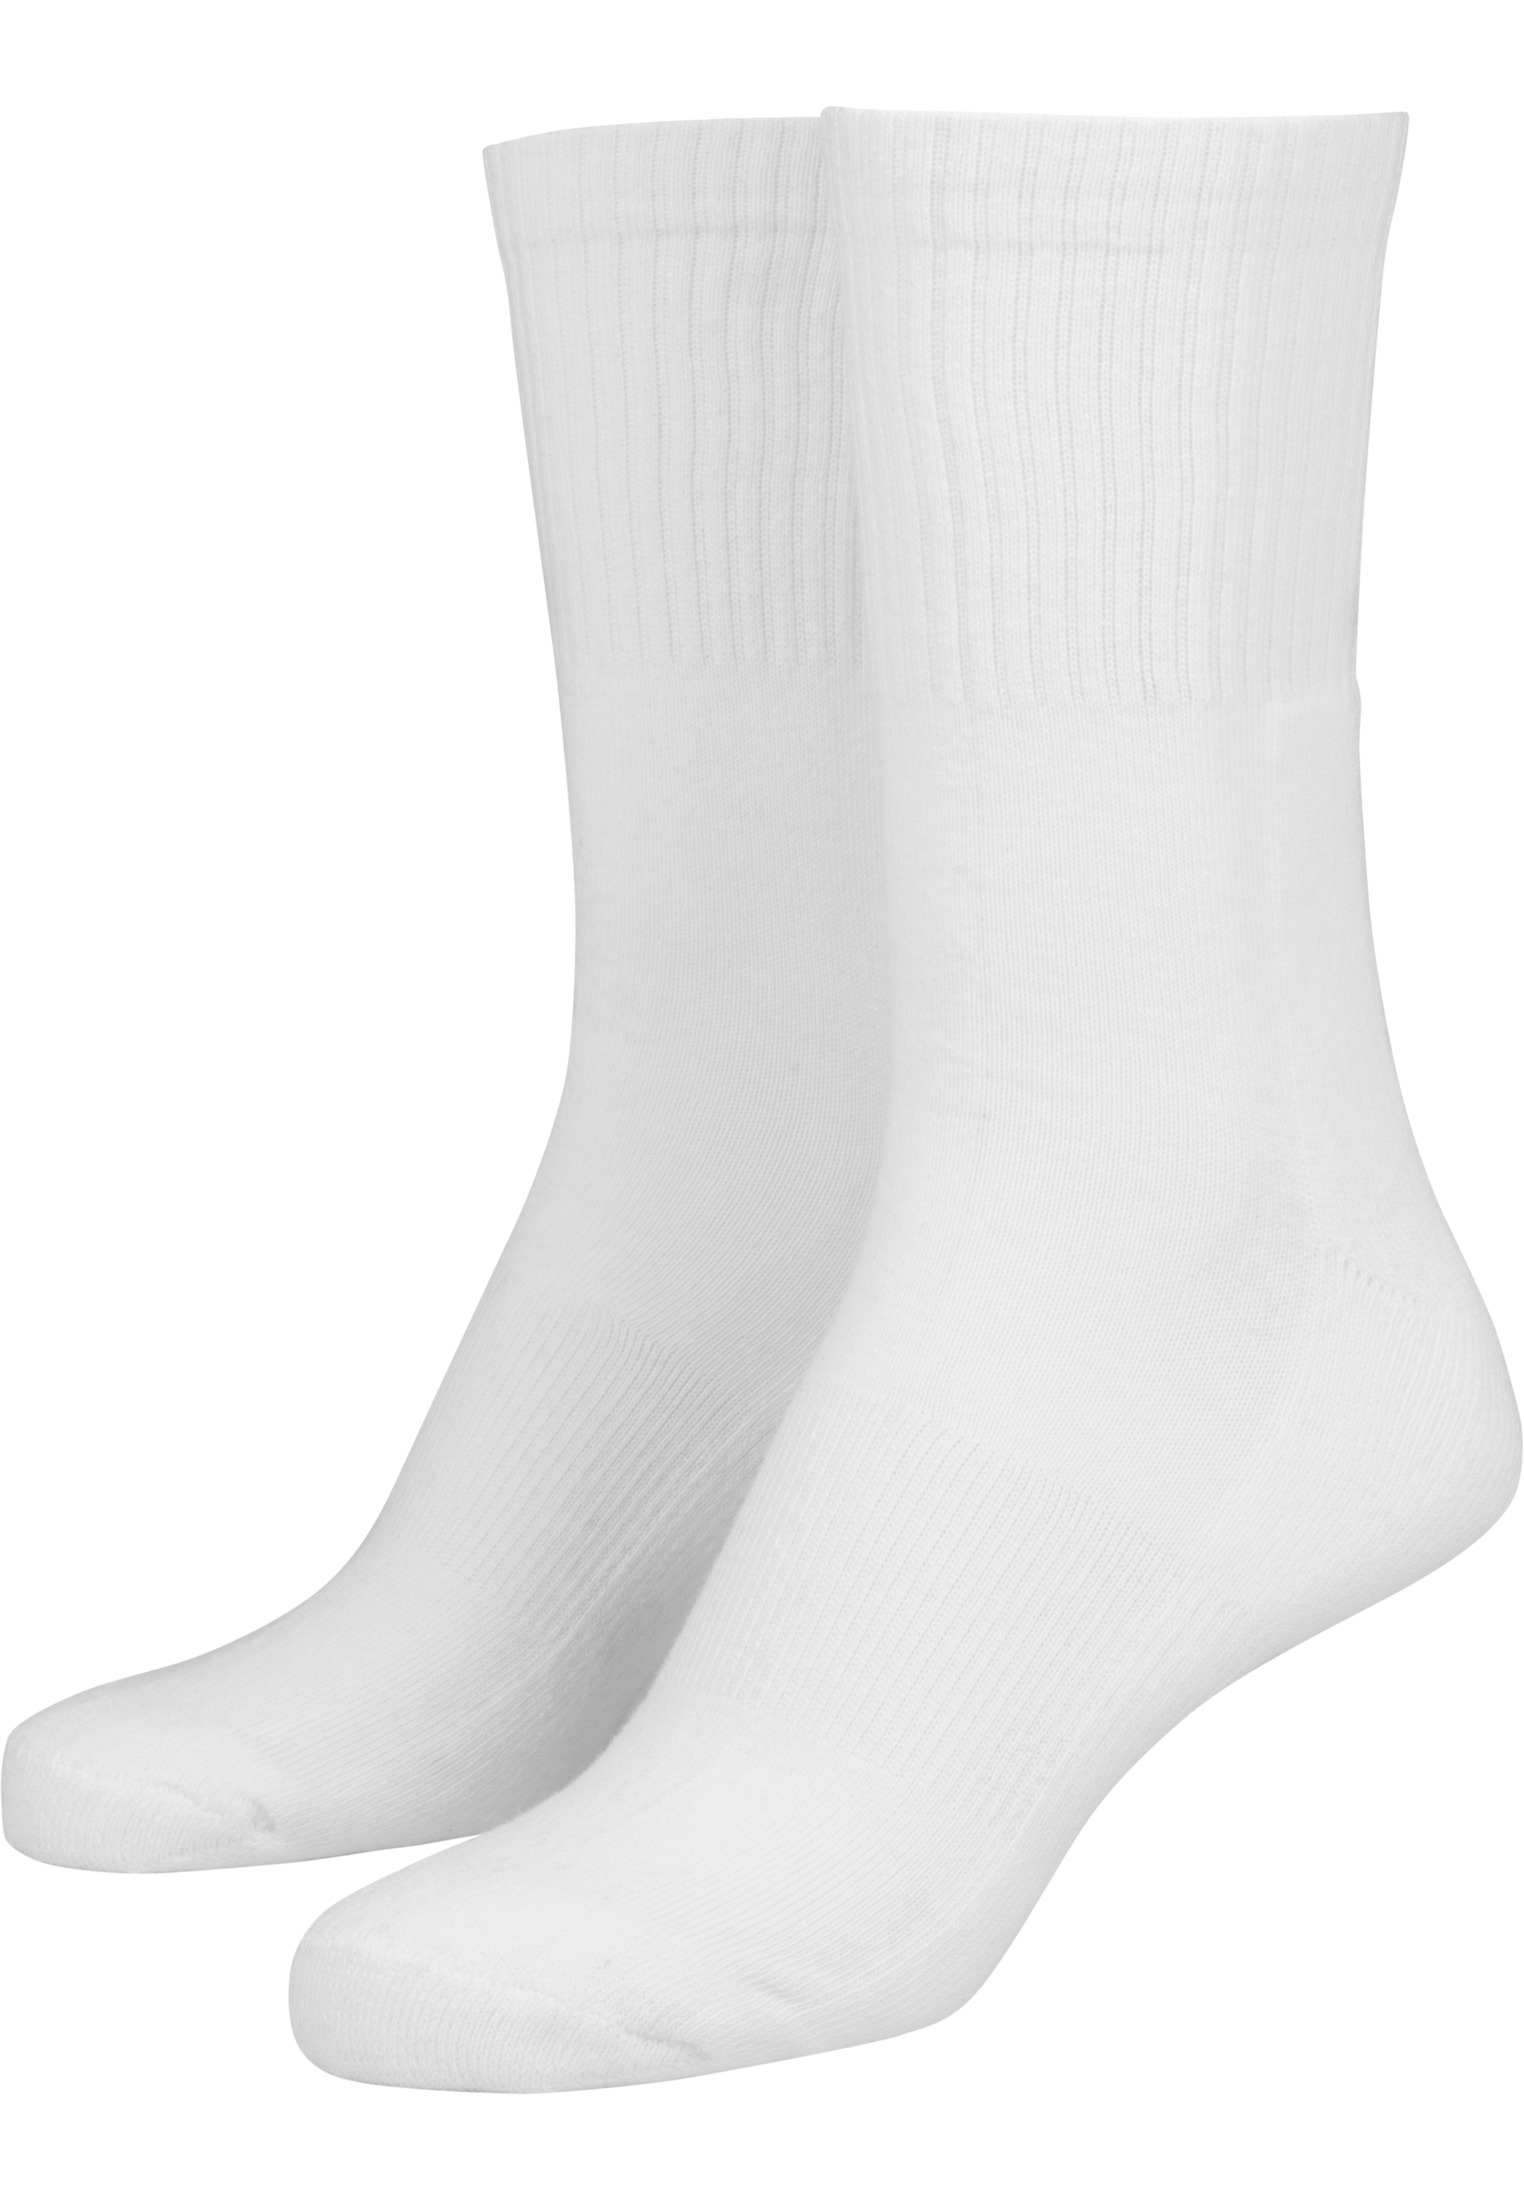 Socken Sport Socks 3-Pack in Farbe blk/wht/gry